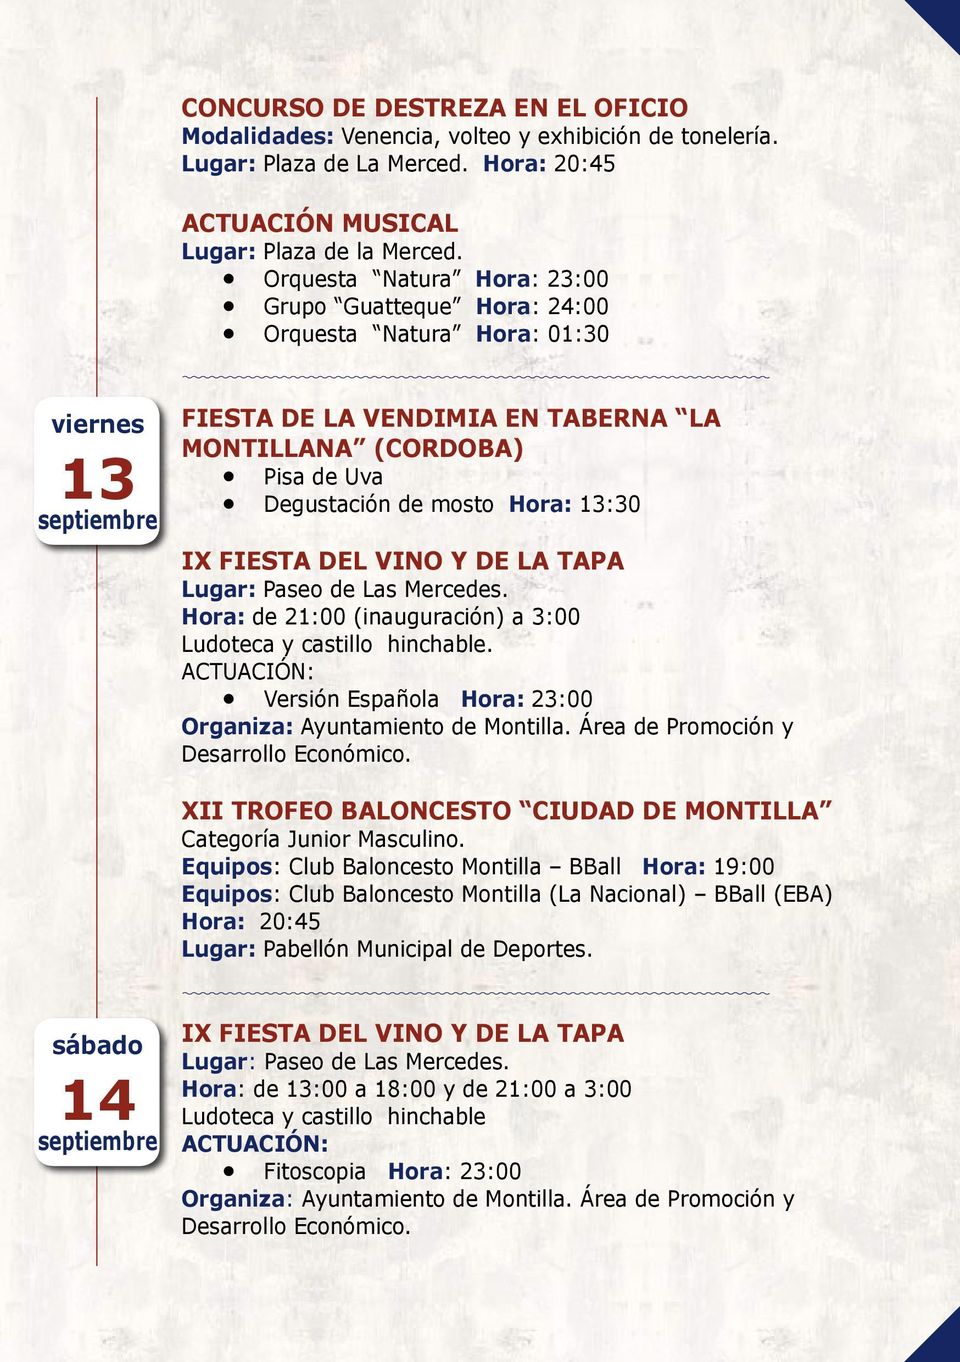 FIESTA DEL VINO Y DE LA TAPA Lugar: Paseo de Las Mercedes. Hora: de 21:00 (inauguración) a 3:00 Ludoteca y castillo hinchable.